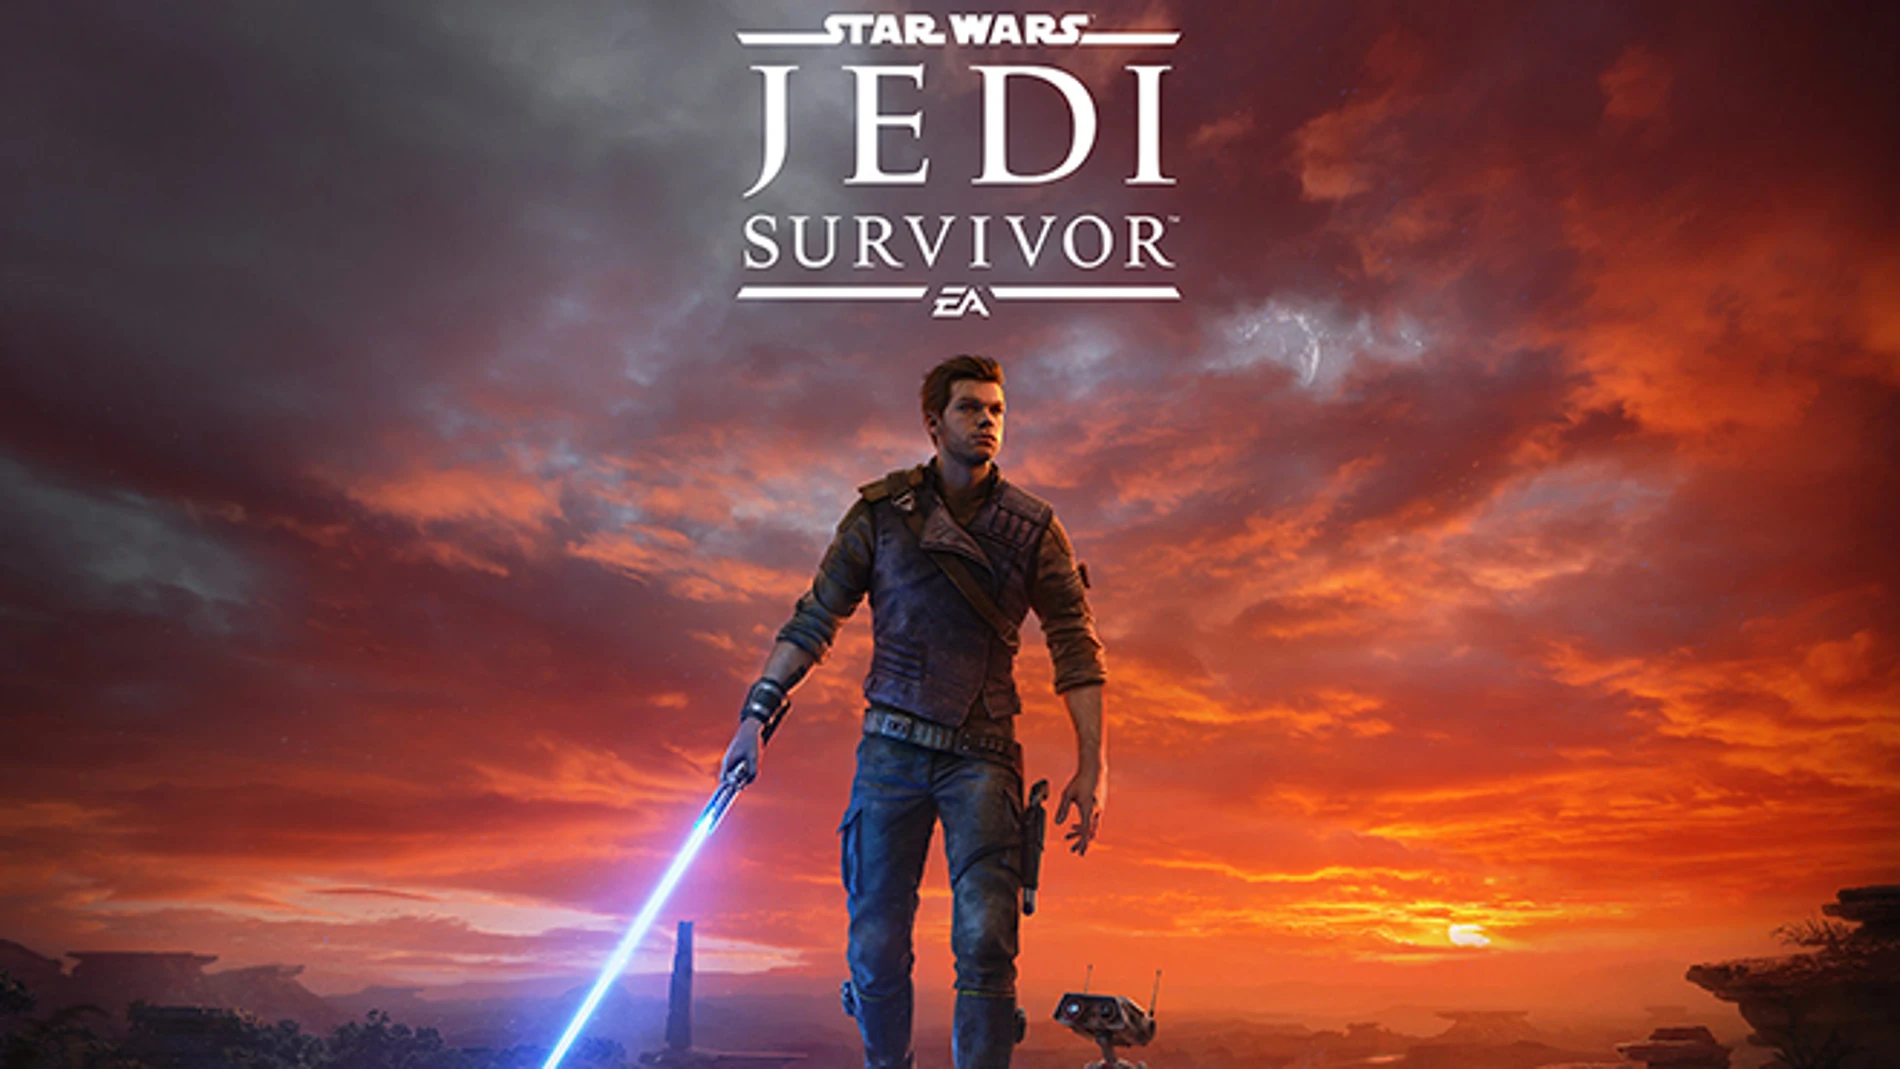 Star Wars Jedi: Survivor corrige una notable cantidad de errores en todas las plataformas.